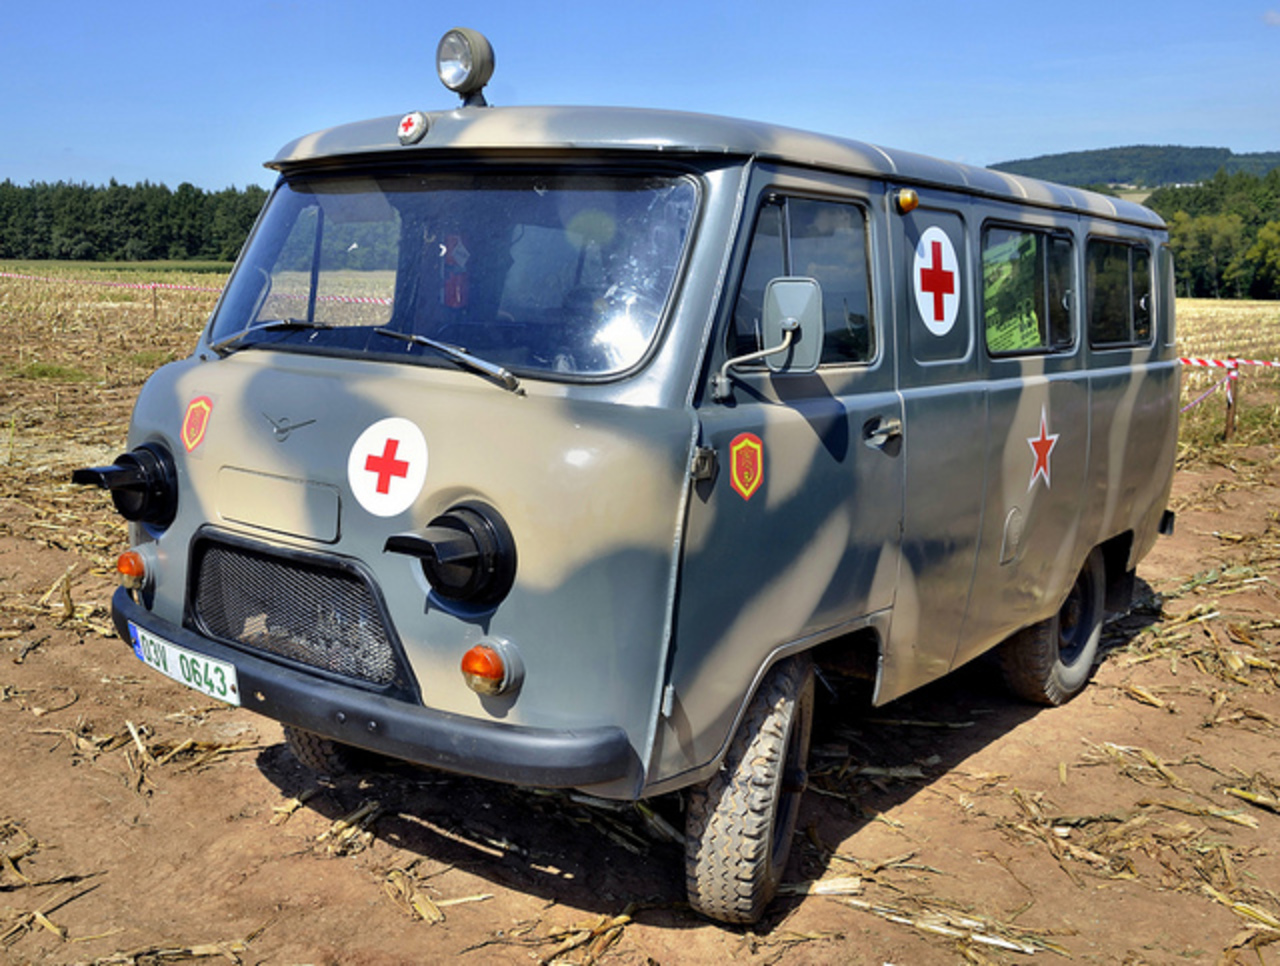 UAZ-452 military ambulance | Flickr - Photo Sharing!